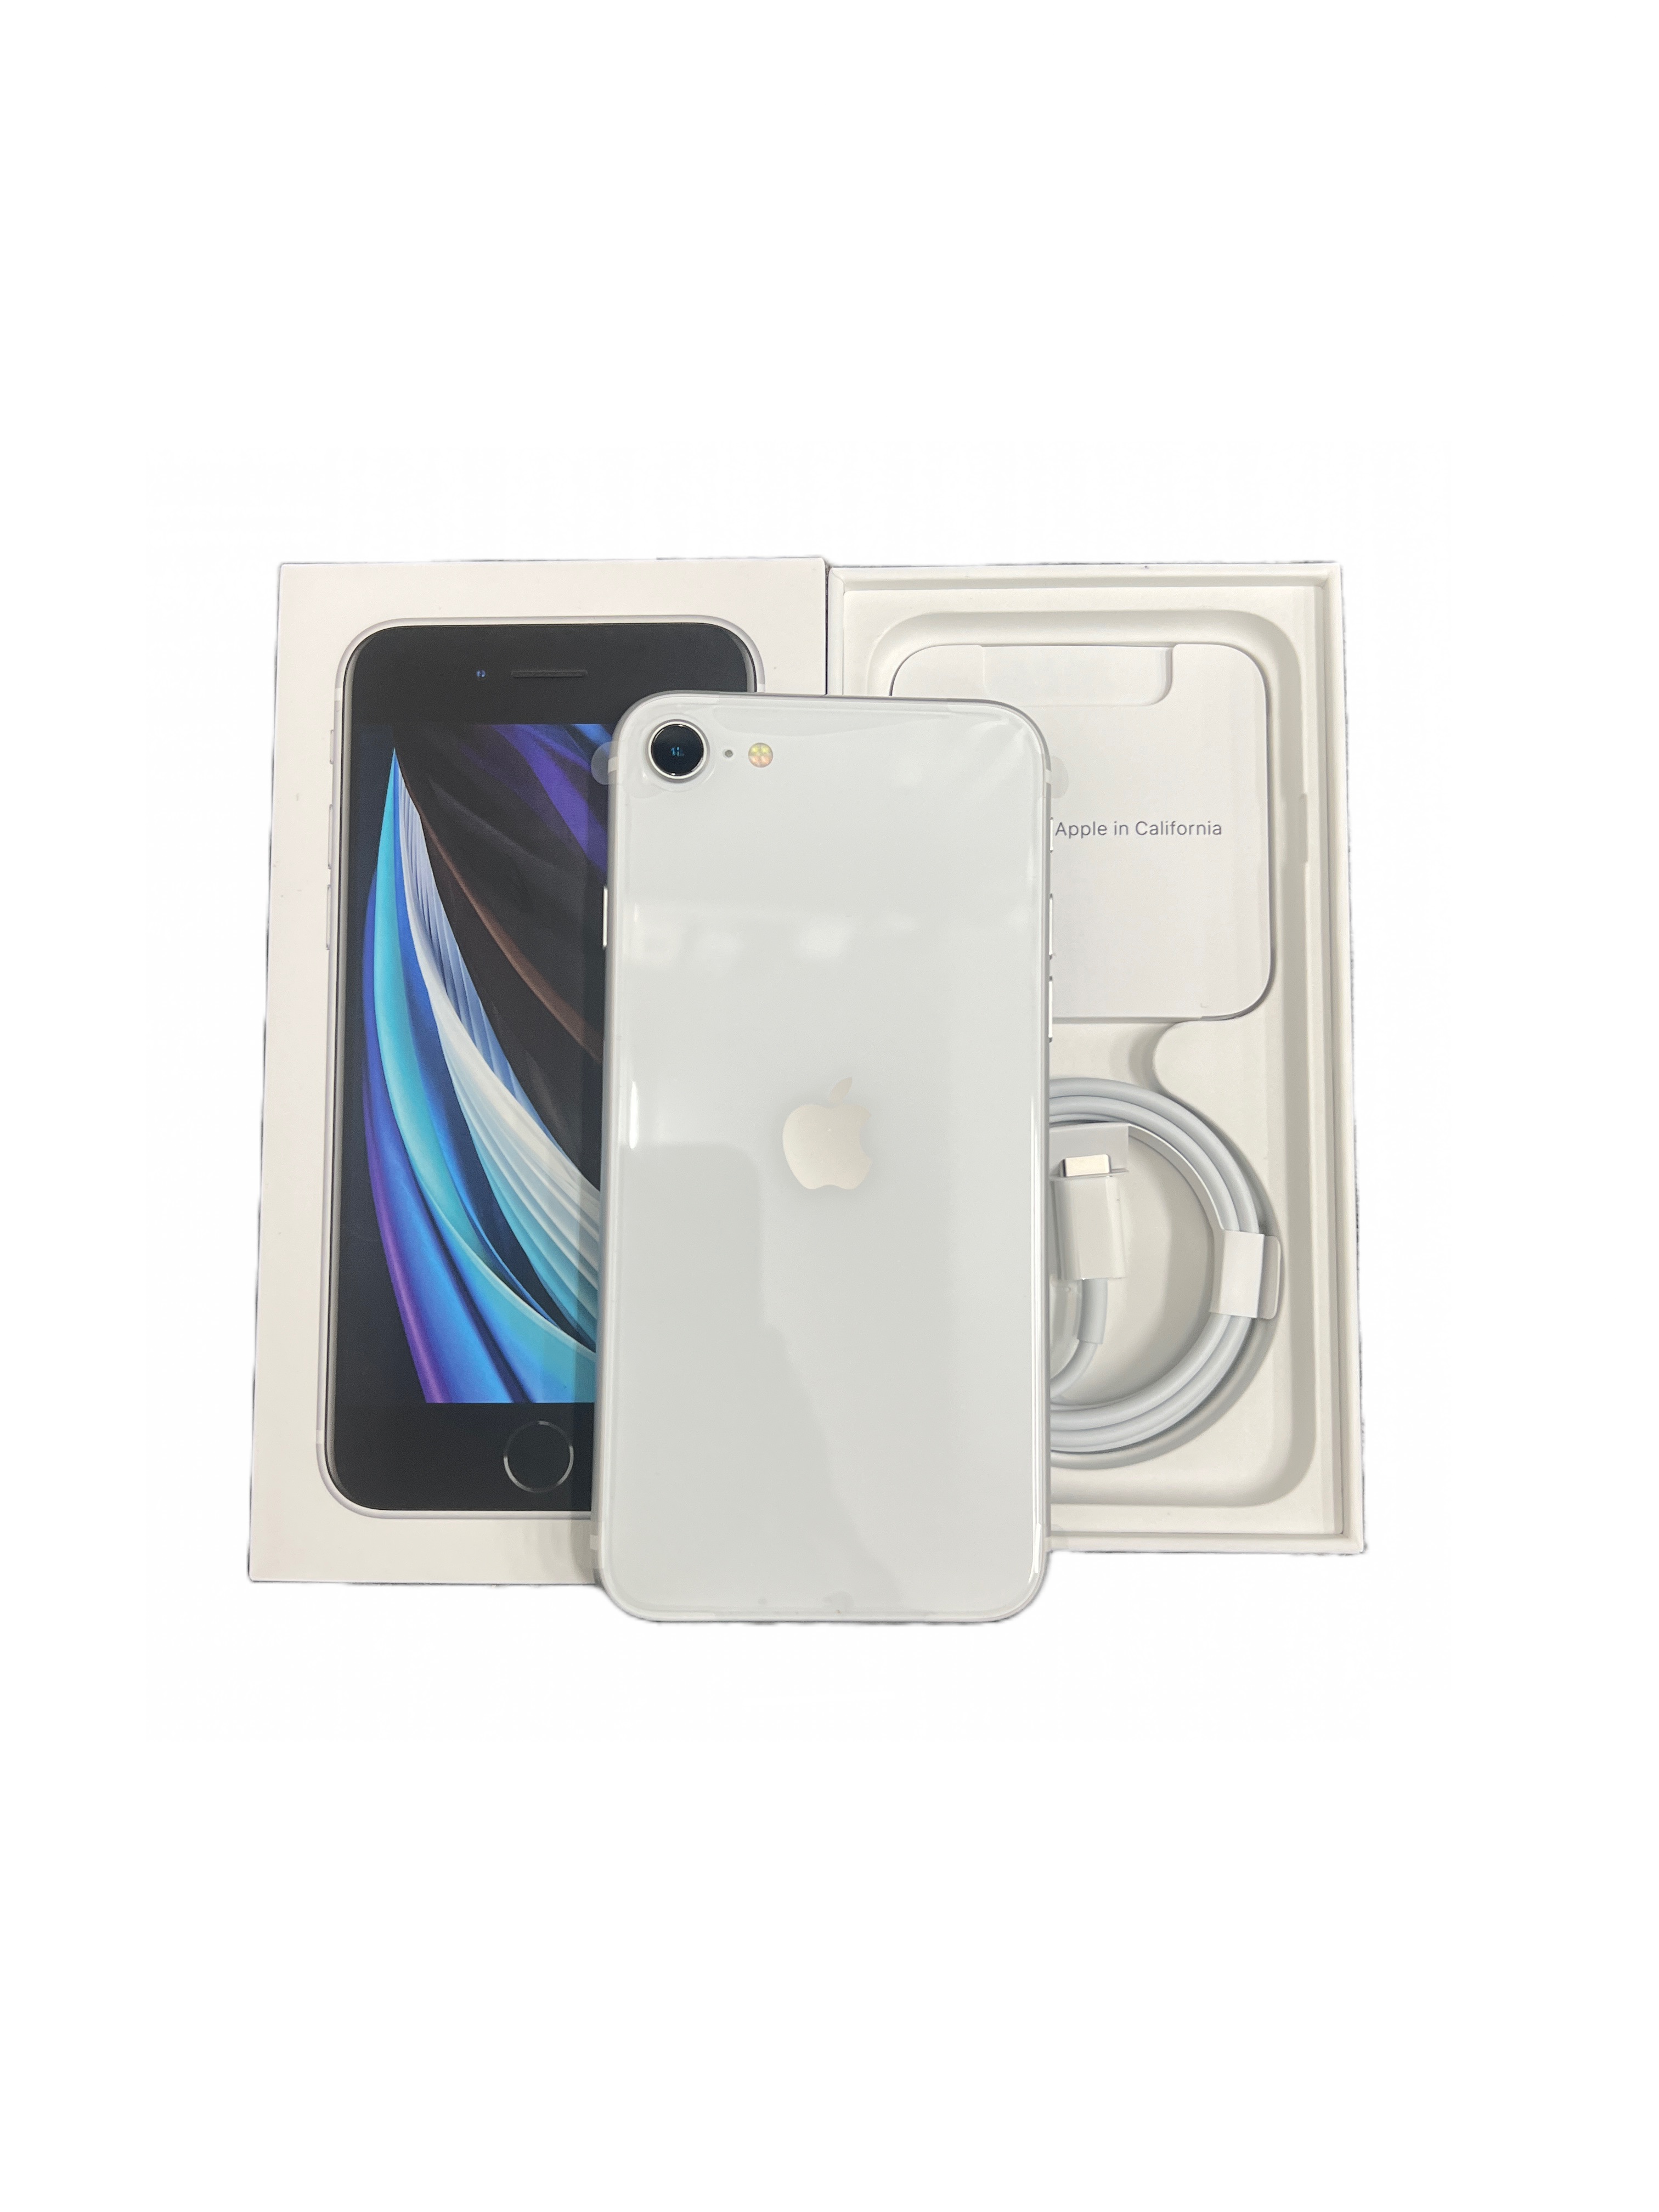 iPhone SE (第2世代) 64GB SIMフリー [ホワイト] (未使用開封品)の価格 【APPLE】と詳細ページ、スマートフォン